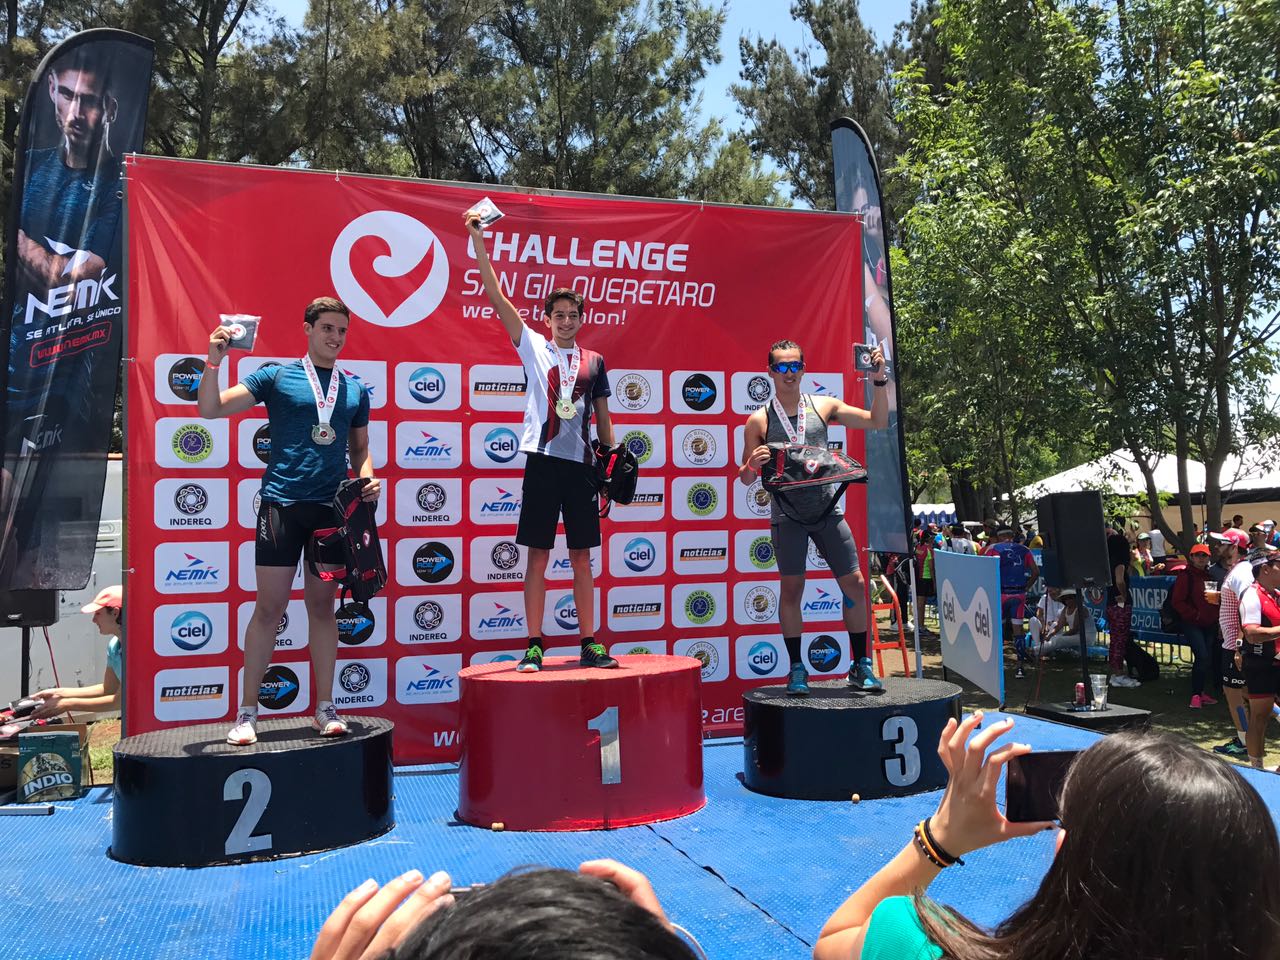  Triatletas queretanos se llevan el podio en el Challenge San Gil 2017